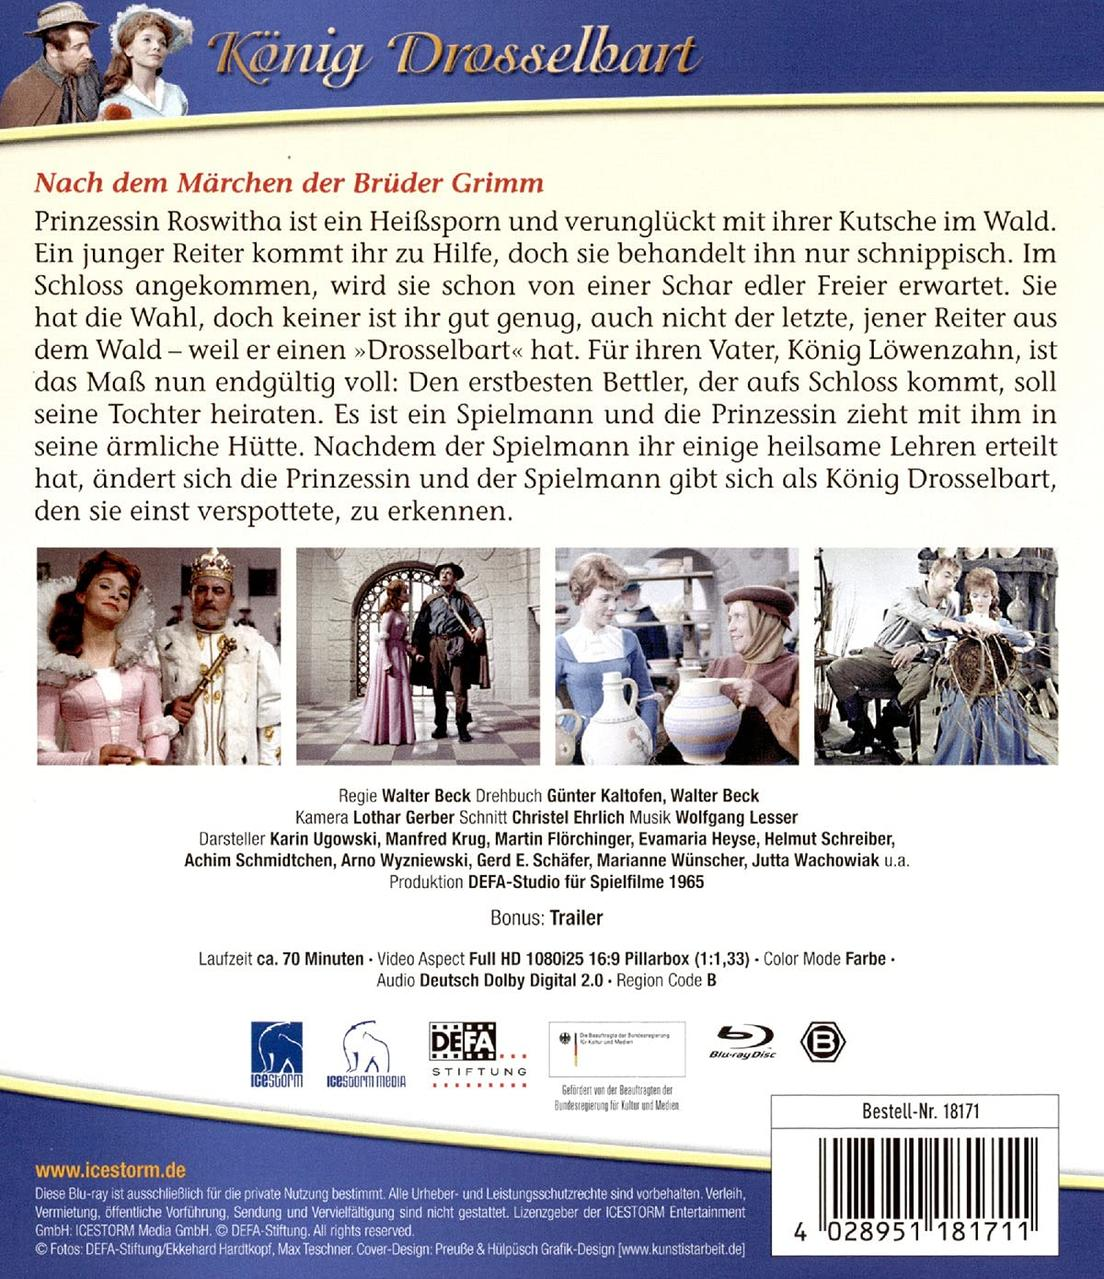 Die Welt der Märchen - König Blu-ray Drosselbart